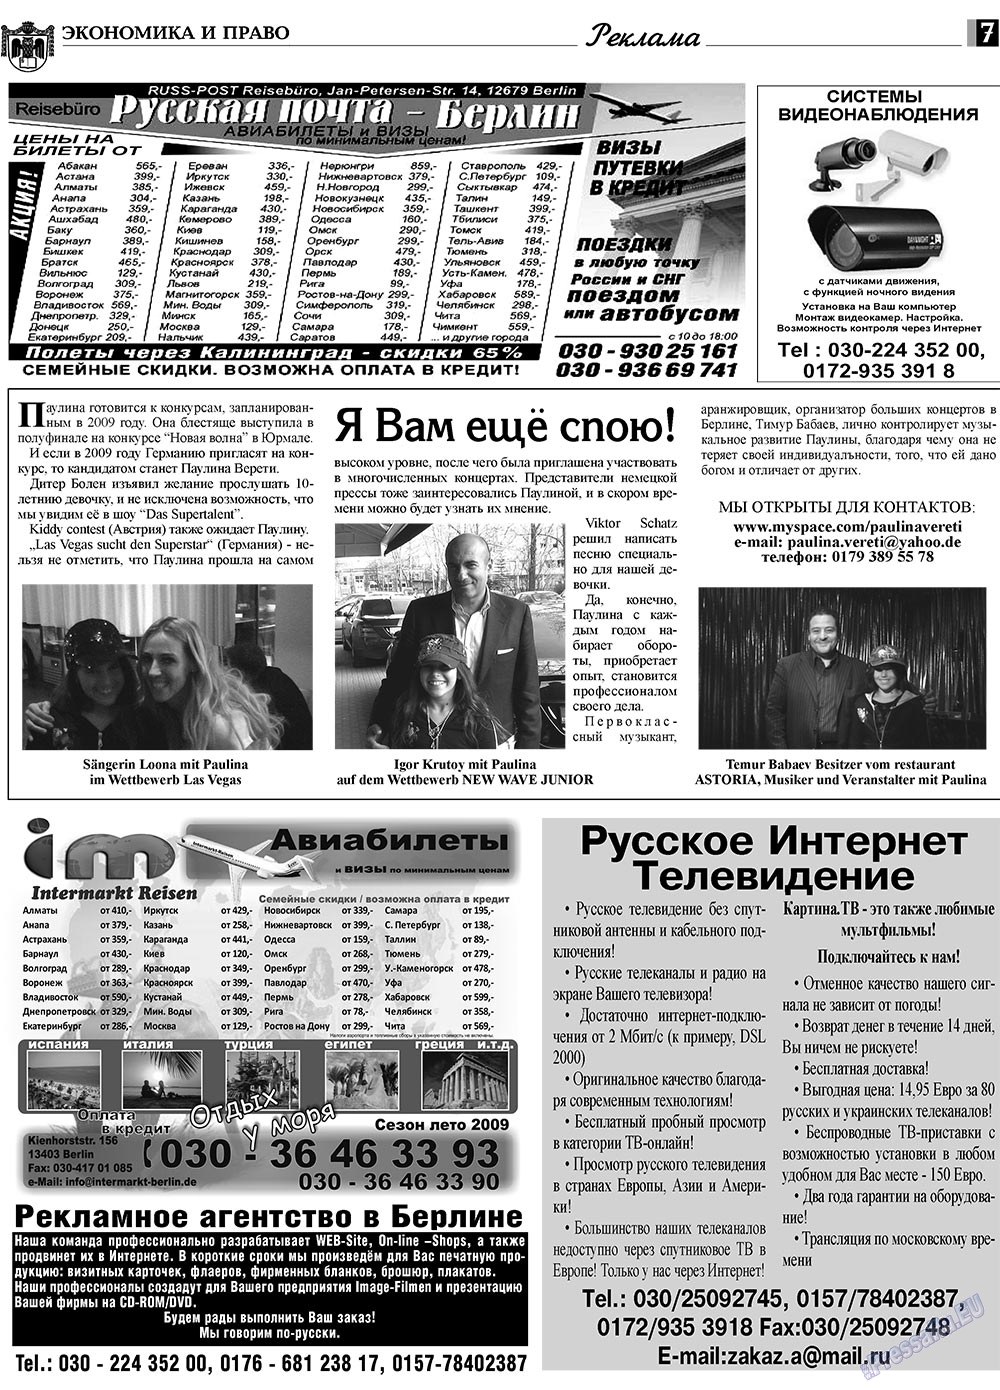 Экономика и право, газета. 2009 №6 стр.7